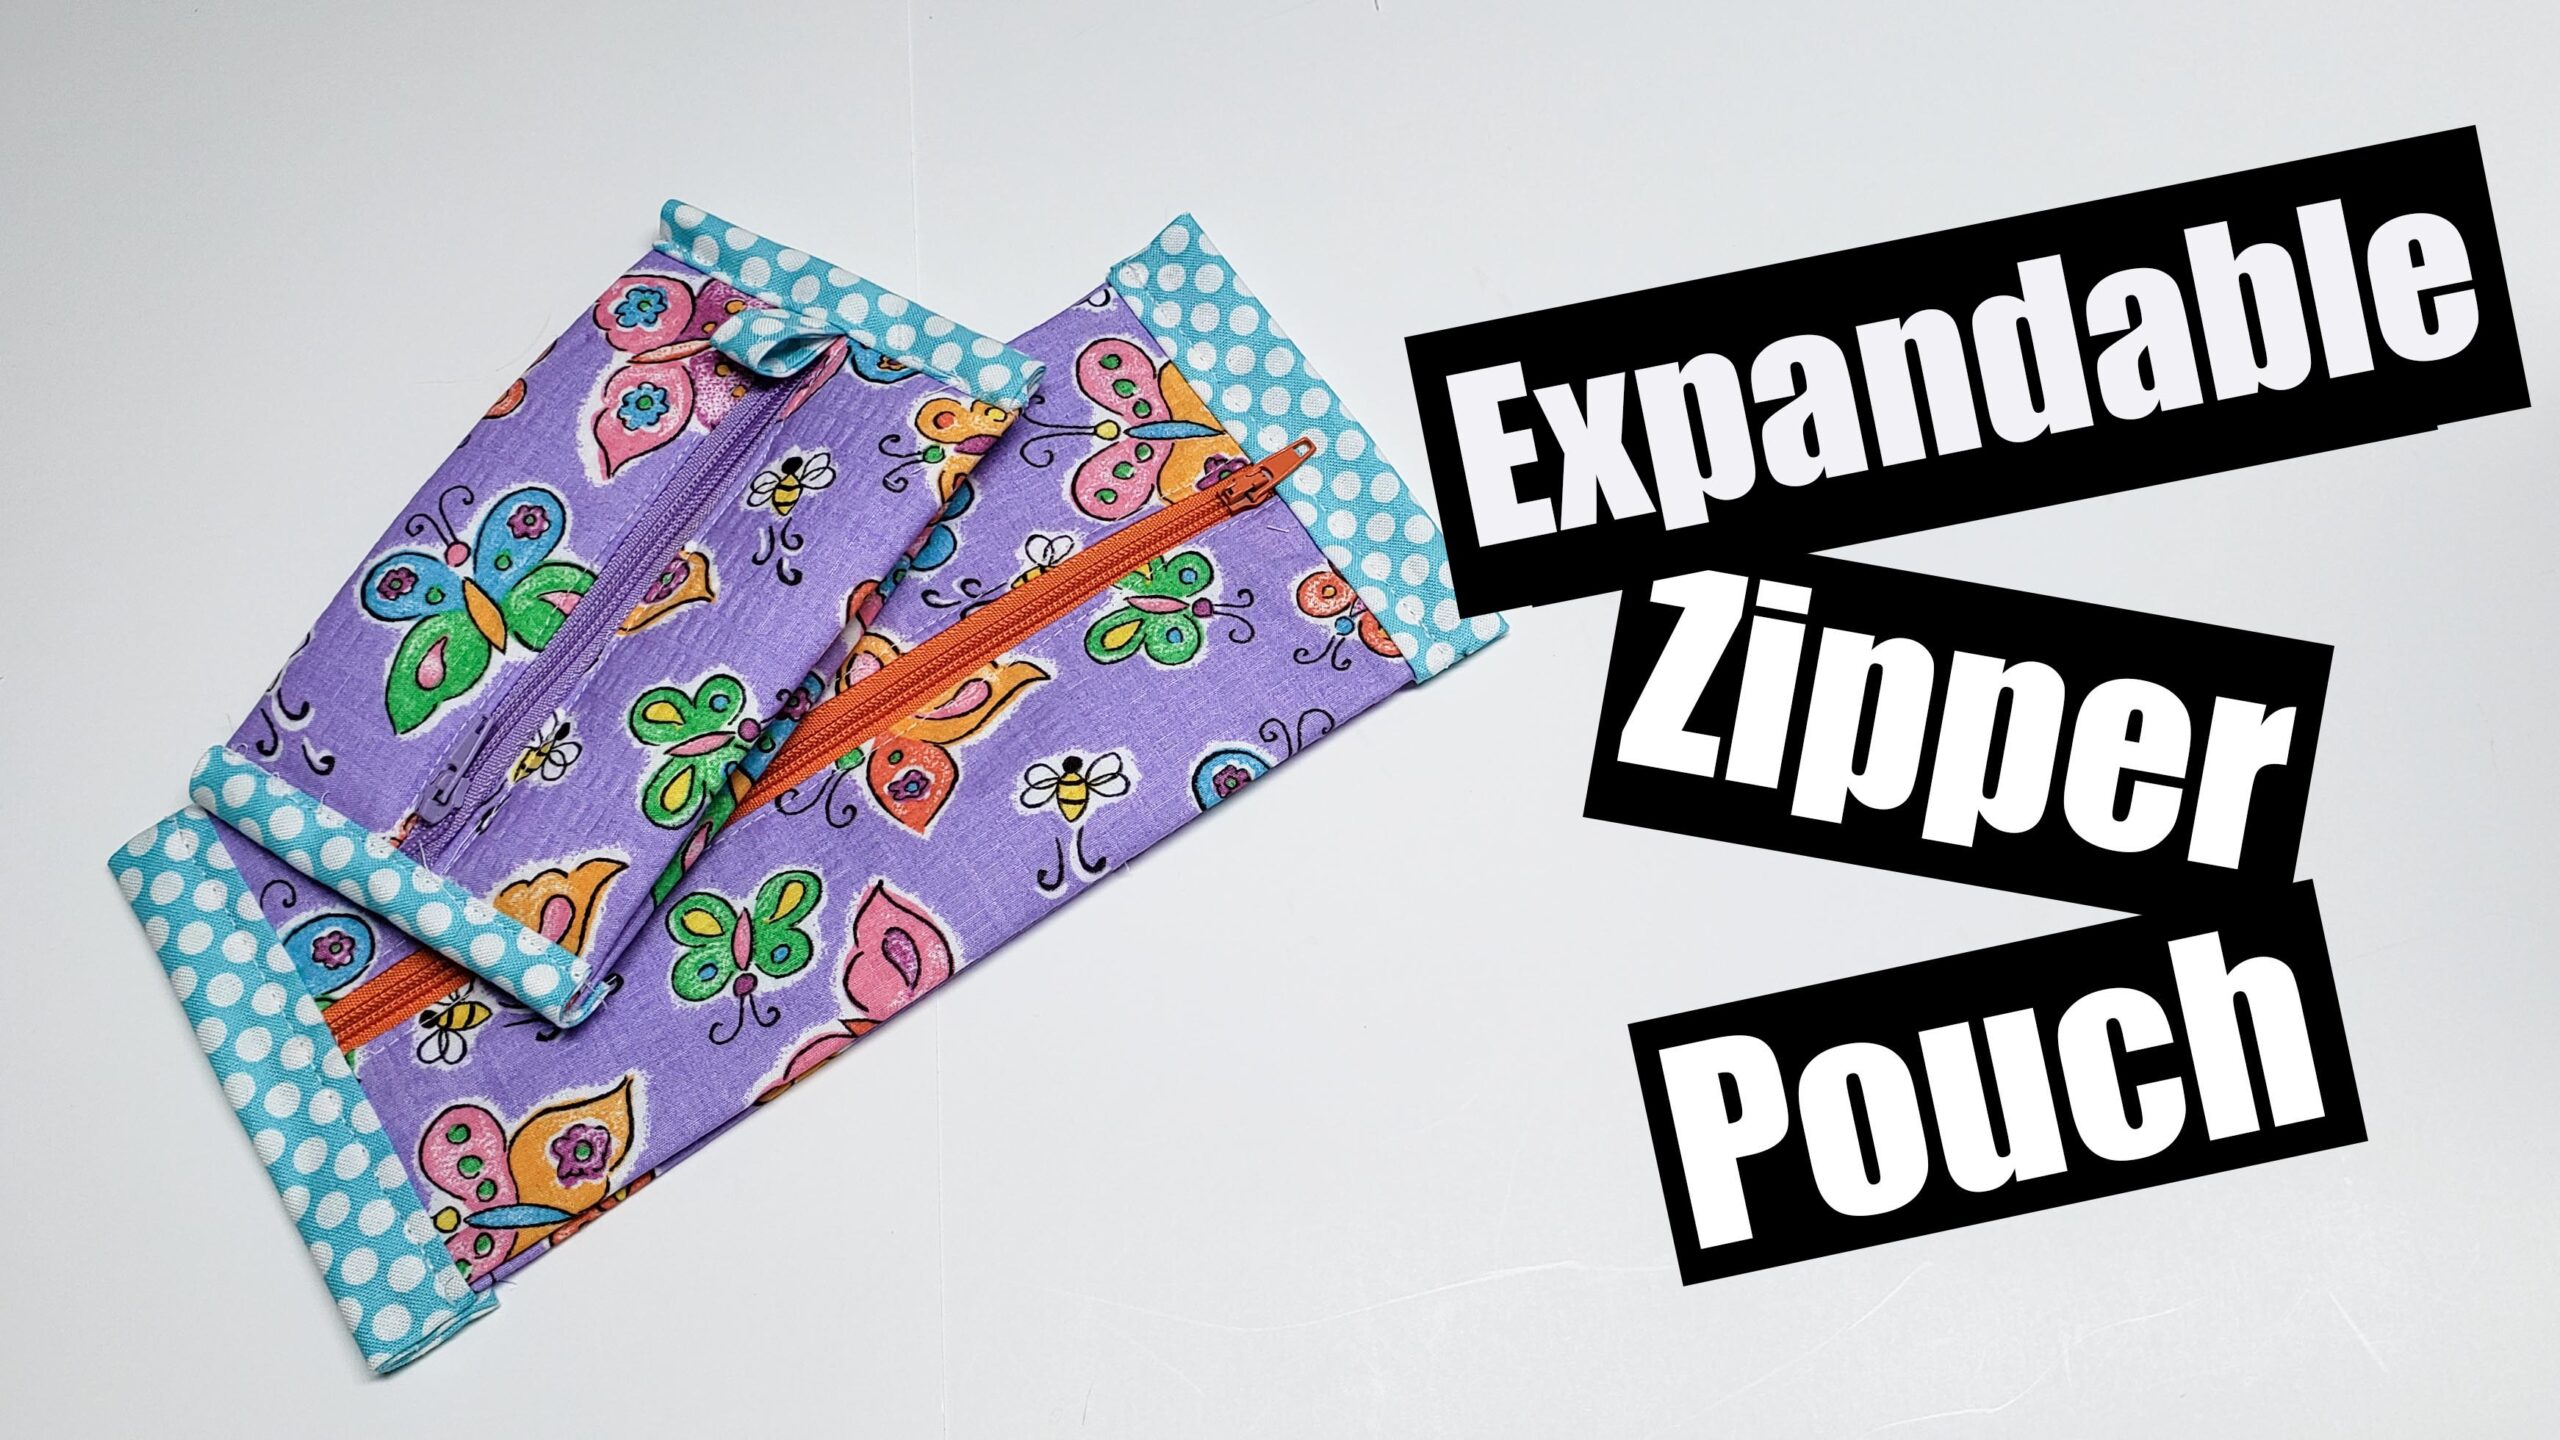 Expandable Zipper pouch